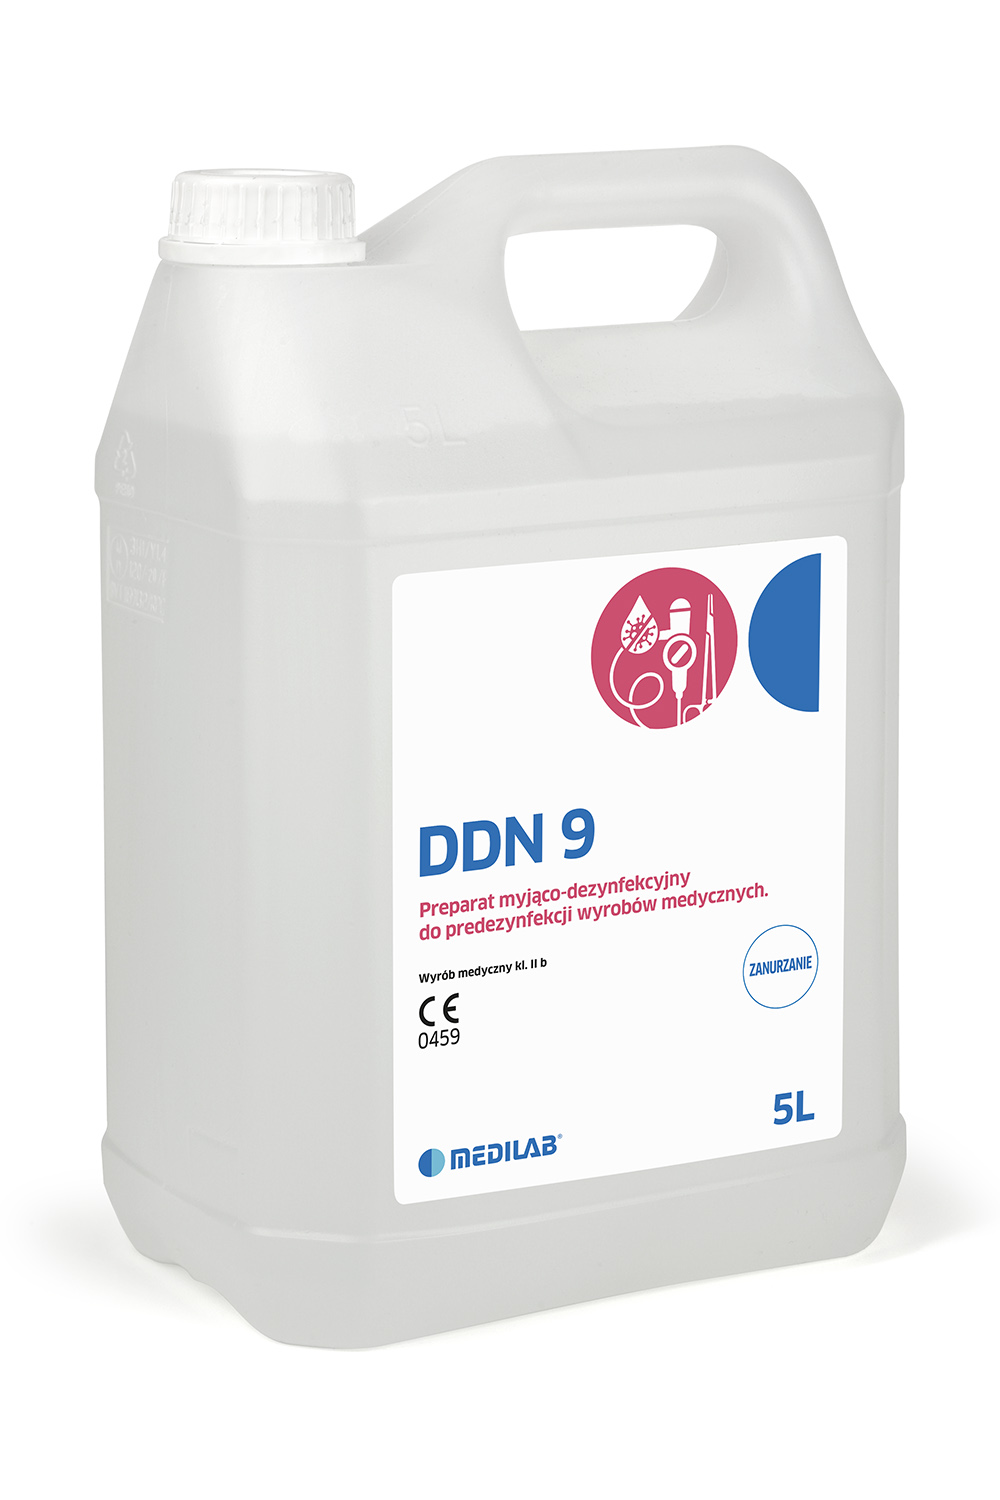 DDN 9 - preparat do manualnej dezynfekcji i mycia narzędzi i endoskopów, 5L